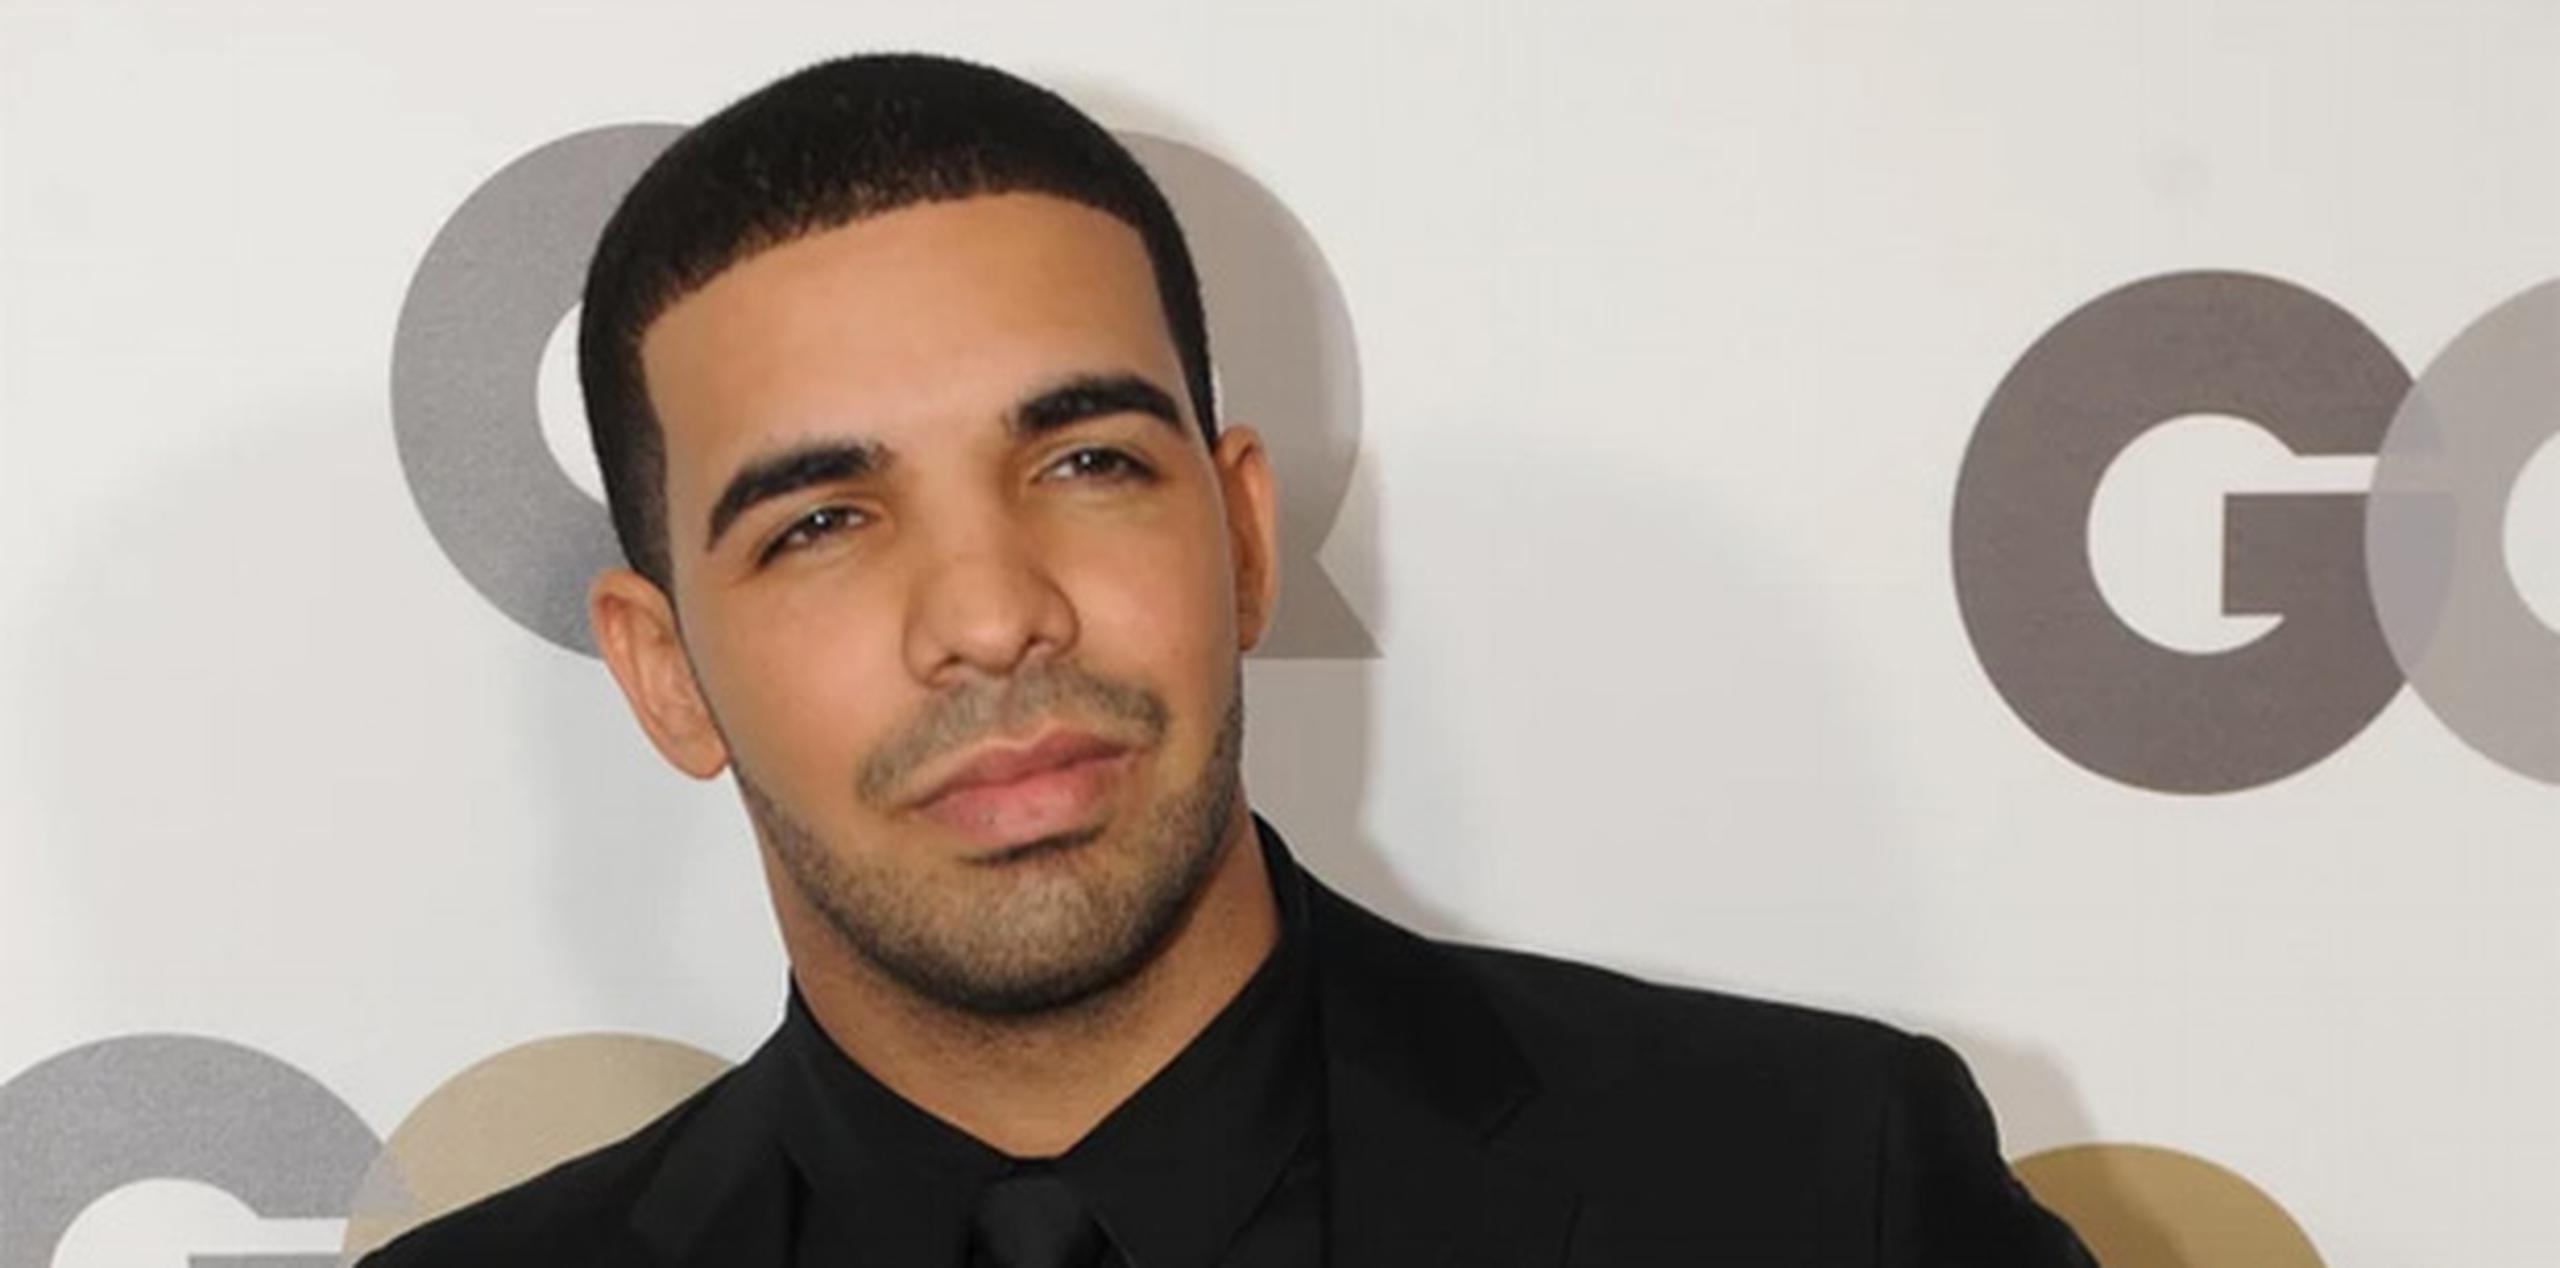 En Estados Unidos, Drake fue el artista más escuchado seguido por The Weeknd, West, Sheeran y Eminem. (AFP)